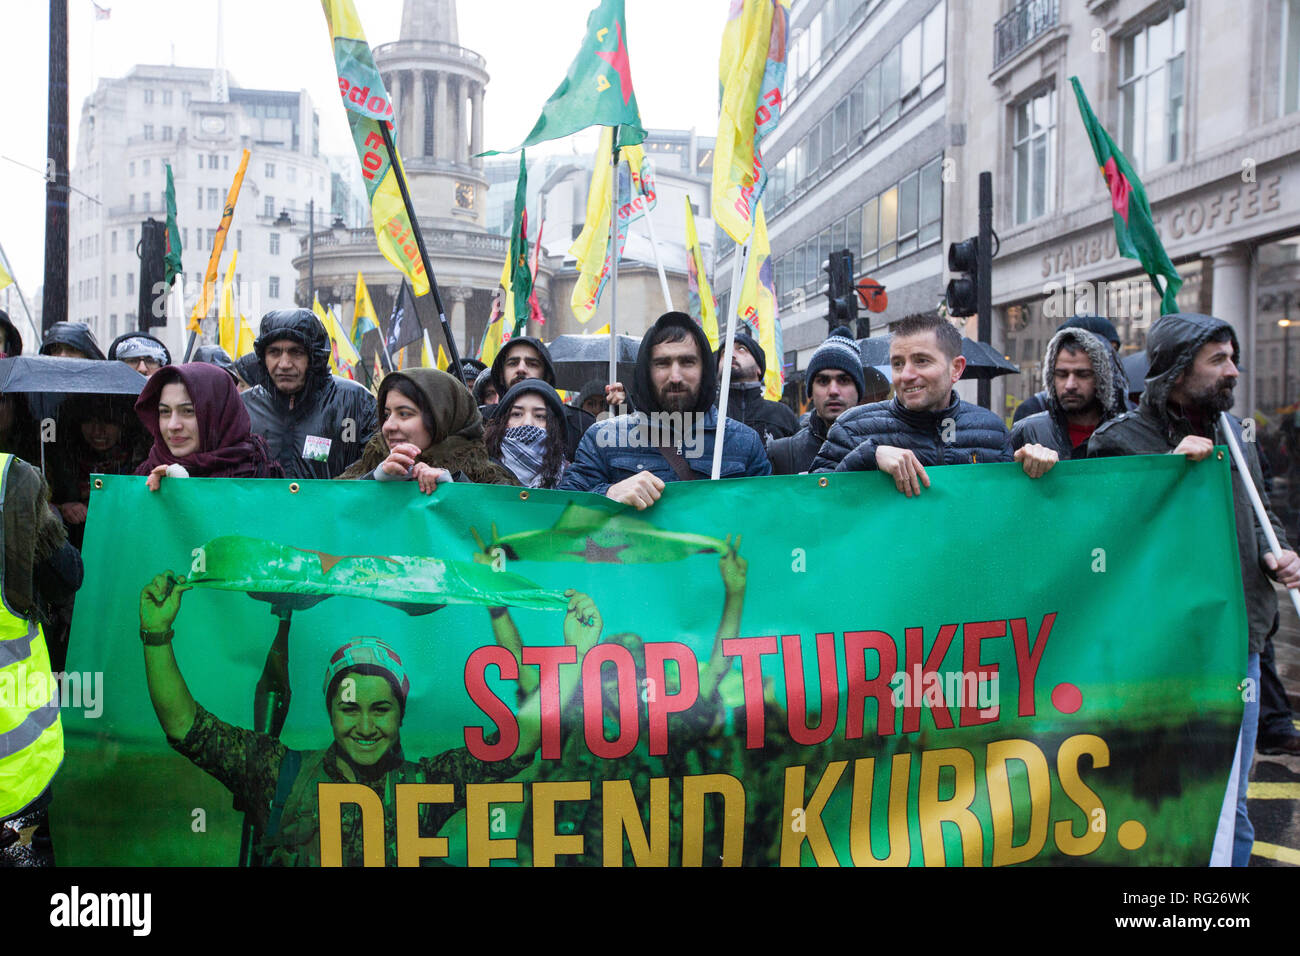 Londres, Reino Unido. 27 de enero de 2019 .pro el Kurdistán manifestantes marzo de Portland Place, a Trafalgar Square para manifestarse en contra de Turquía del supuesto apoyo del Estado Islámico. Crédito: George Cracknell Wright/Alamy Live News Foto de stock